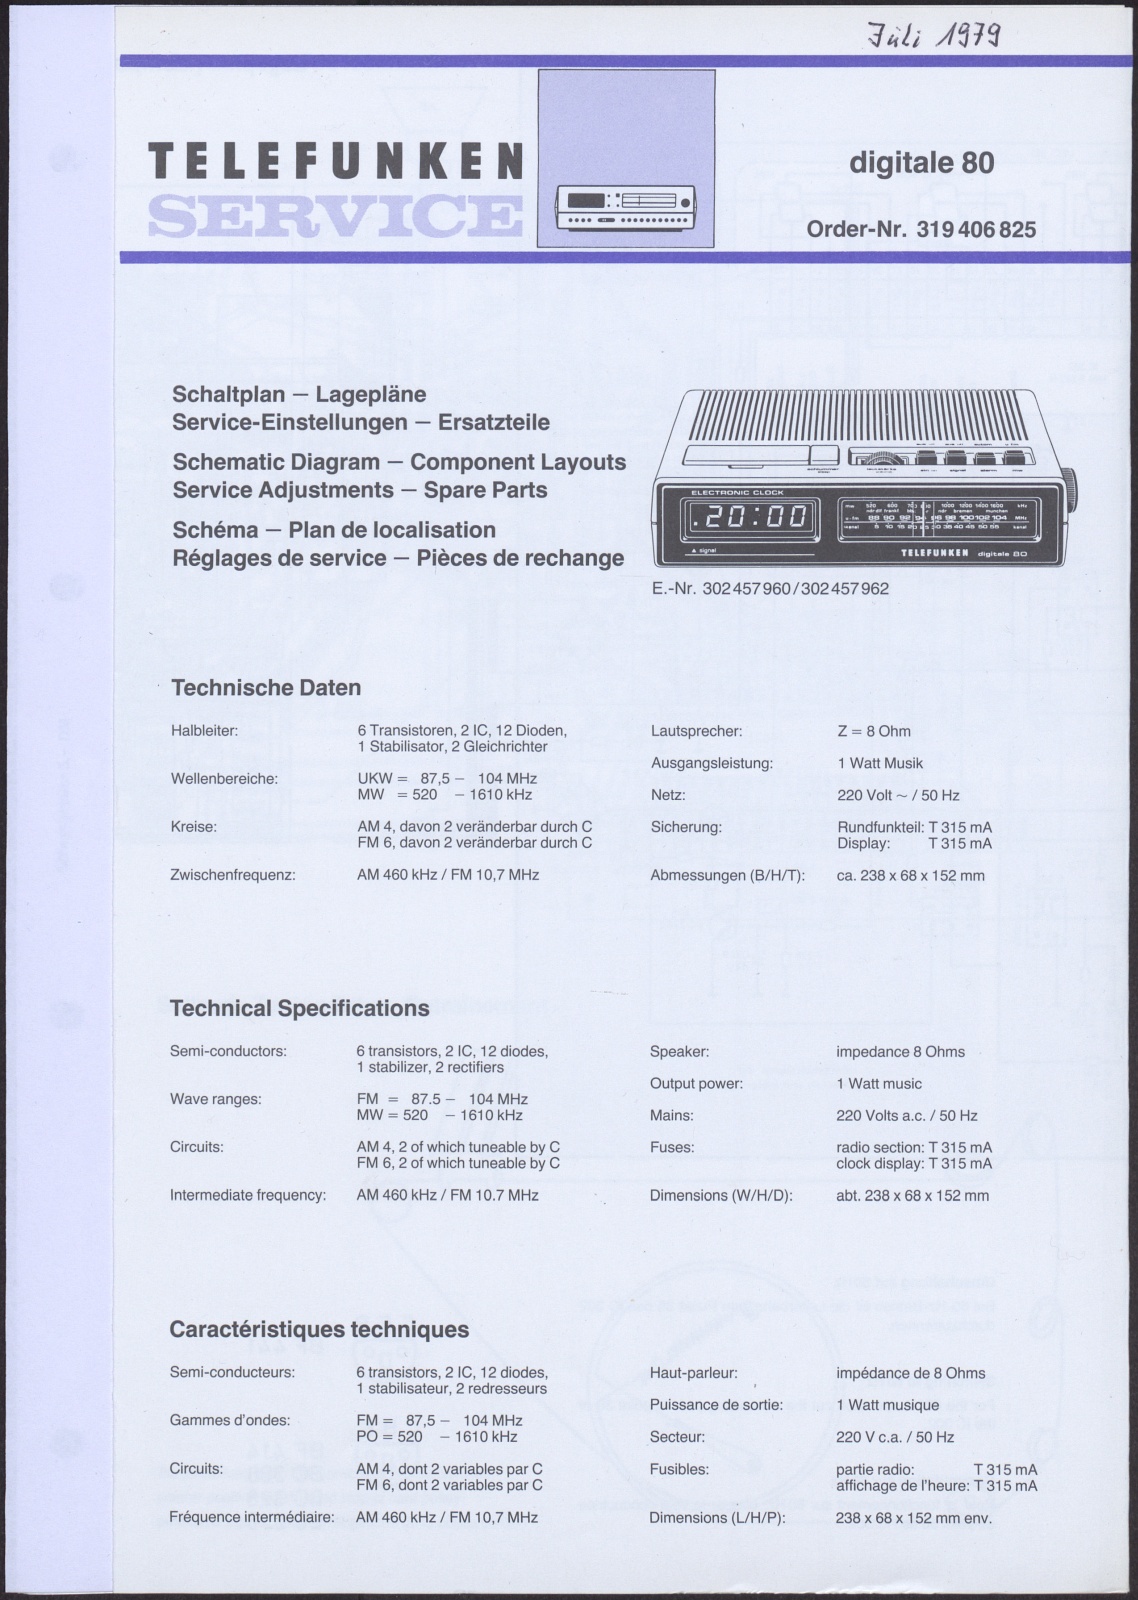 Bedienungsanleitung: Telefunken Service digitale 80 (Stiftung Deutsches Technikmuseum Berlin CC0)